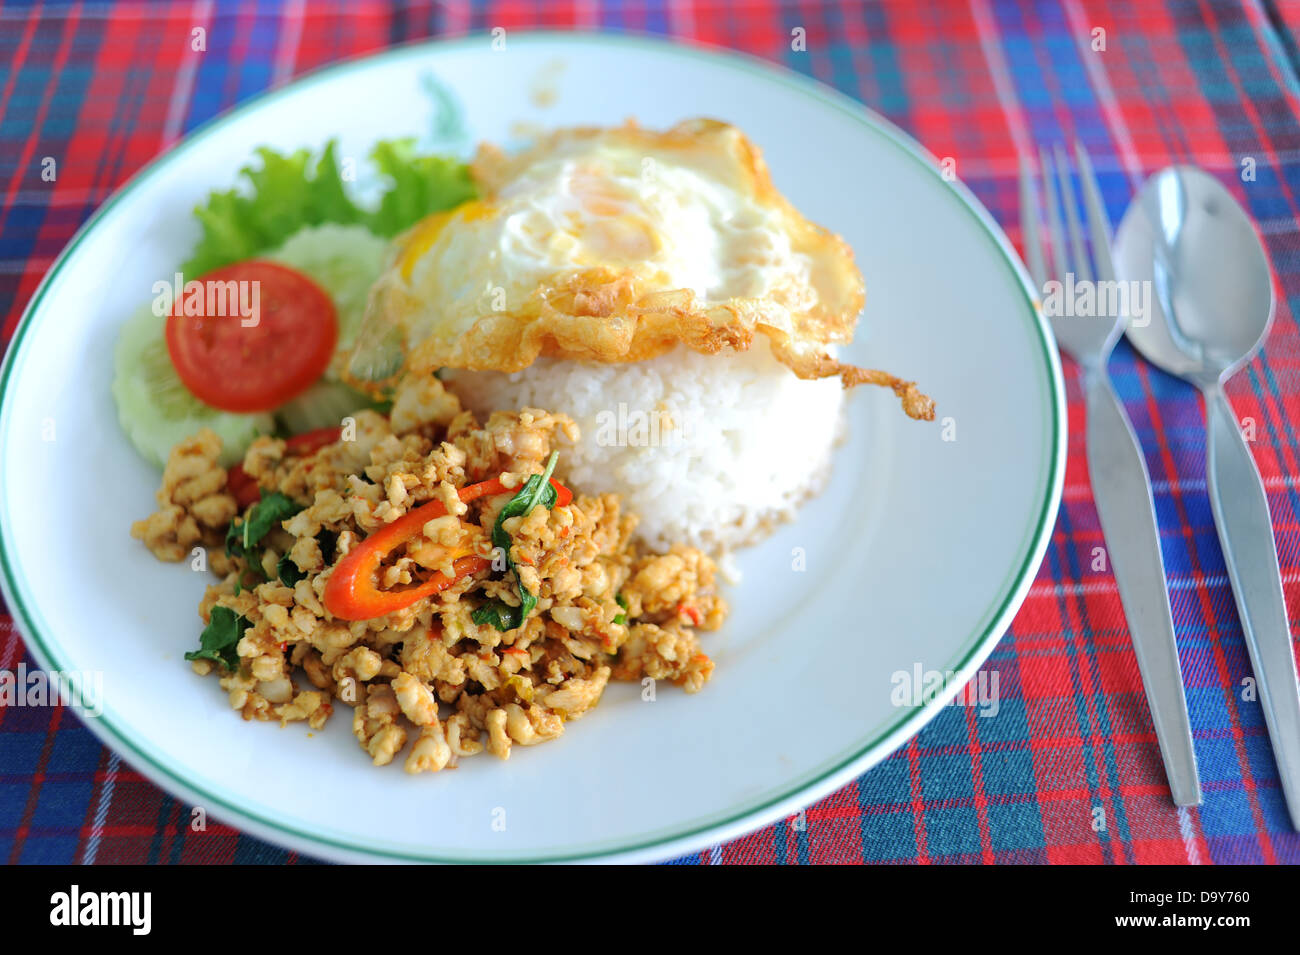 Basil Chicken gebratener Reis Rezept, Thai scharfes Essen Stockfoto